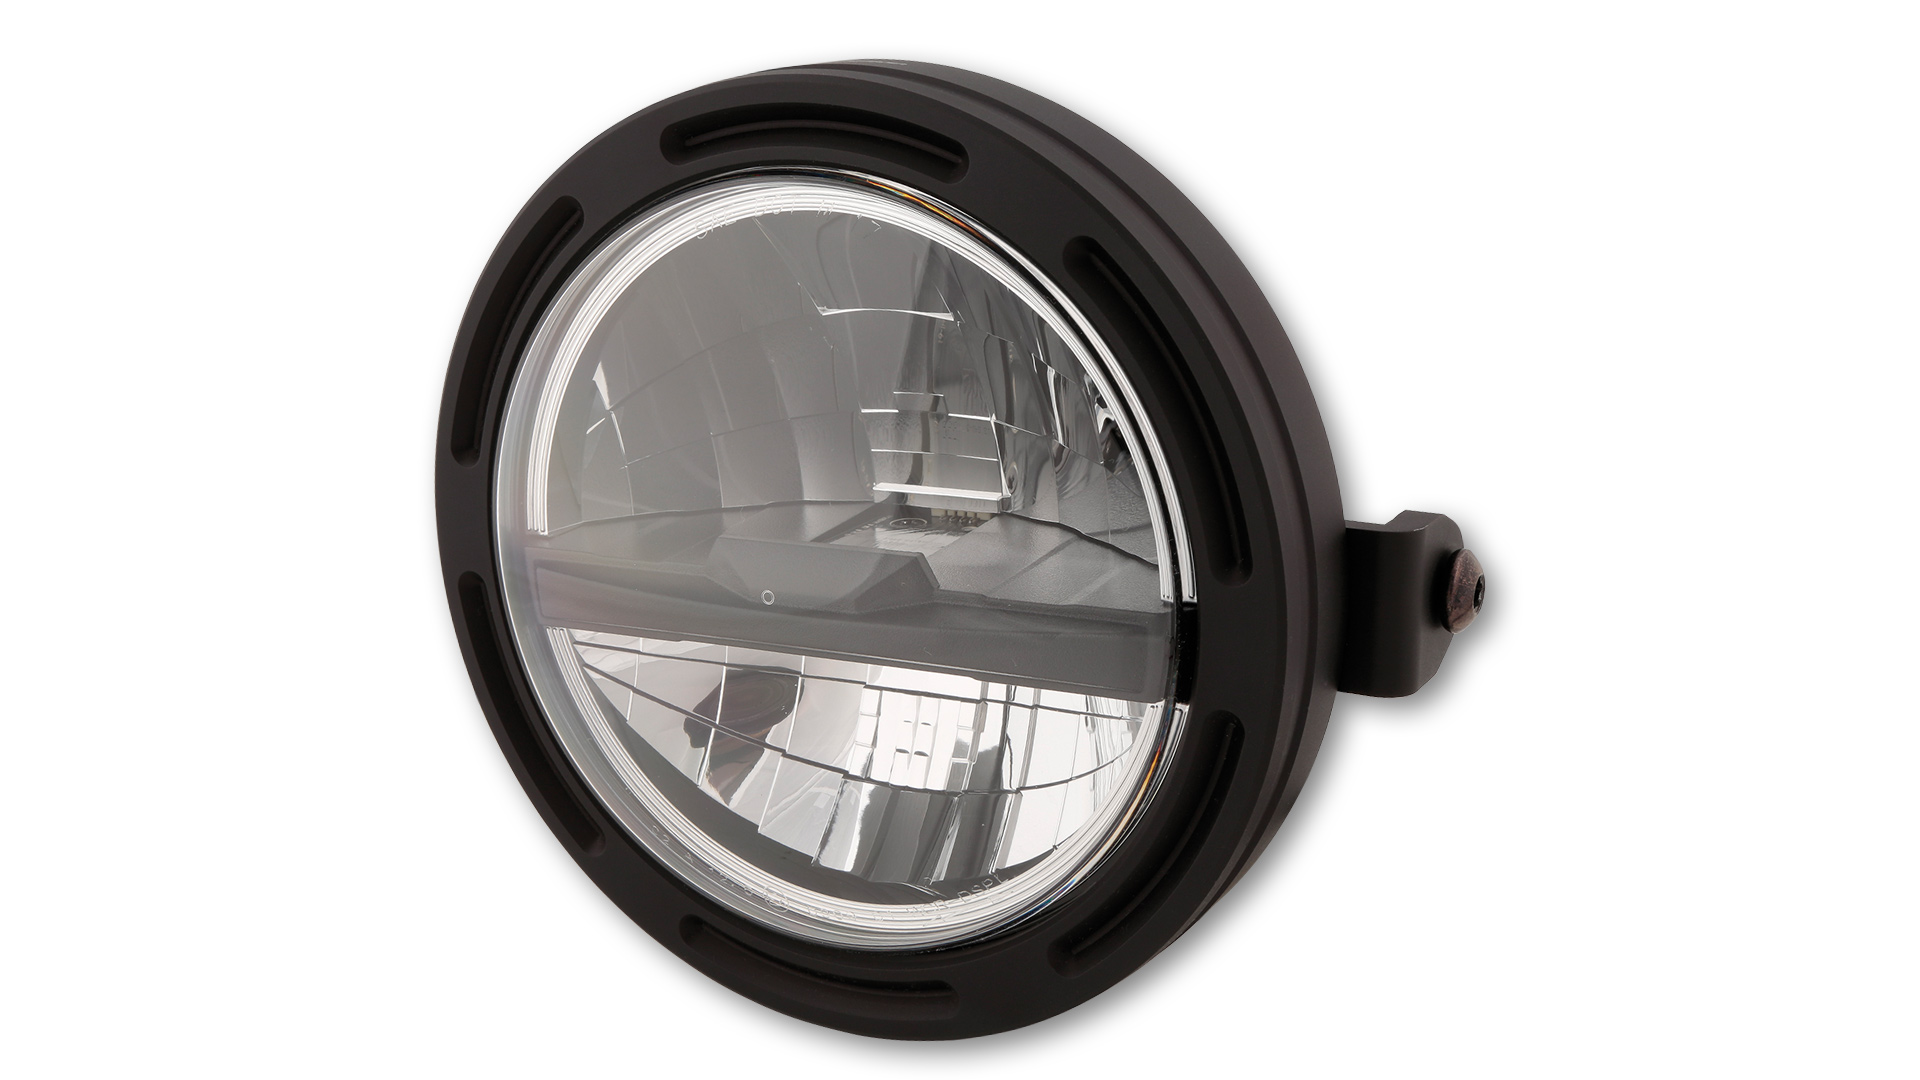 5 3/4 pulgadas Faro principal LED FRAME-R2 TIPO 5 con función de luz de estacionamiento, redondo con reflector cromado, bisel negro y cristal transparente. Disponible con montaje lateral o inferior, E-approved.